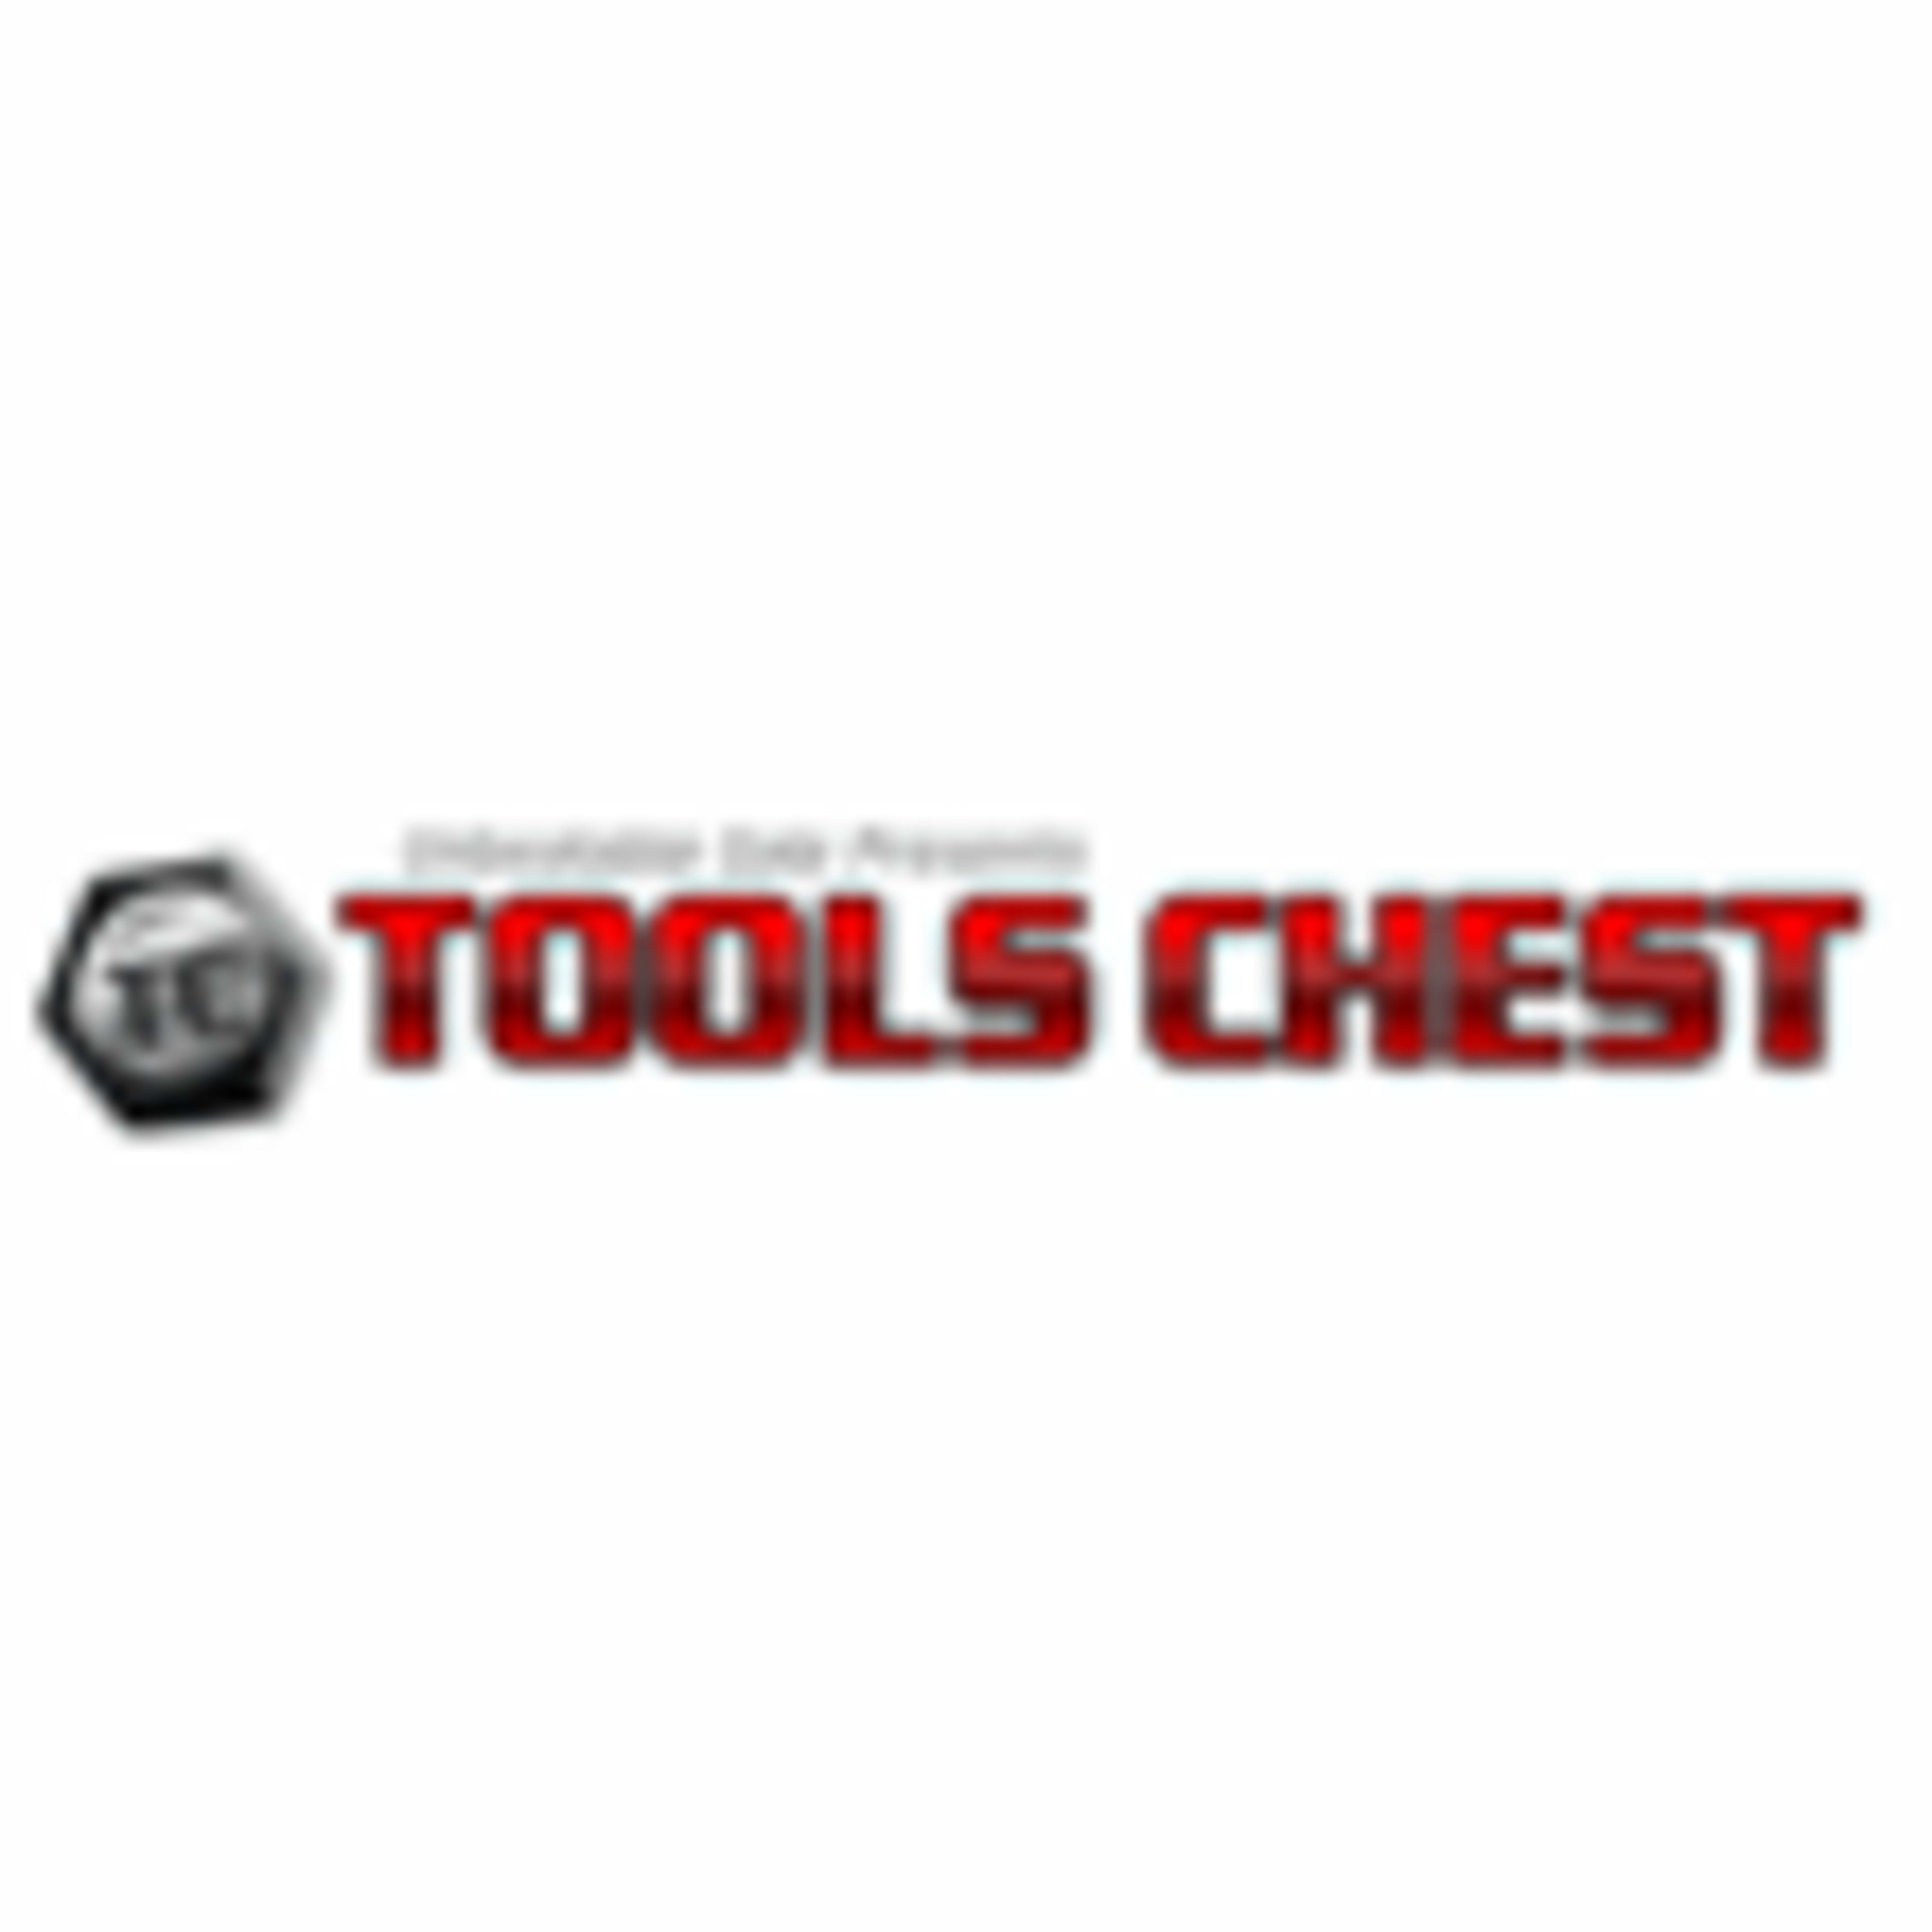 ToolsChest.com Code